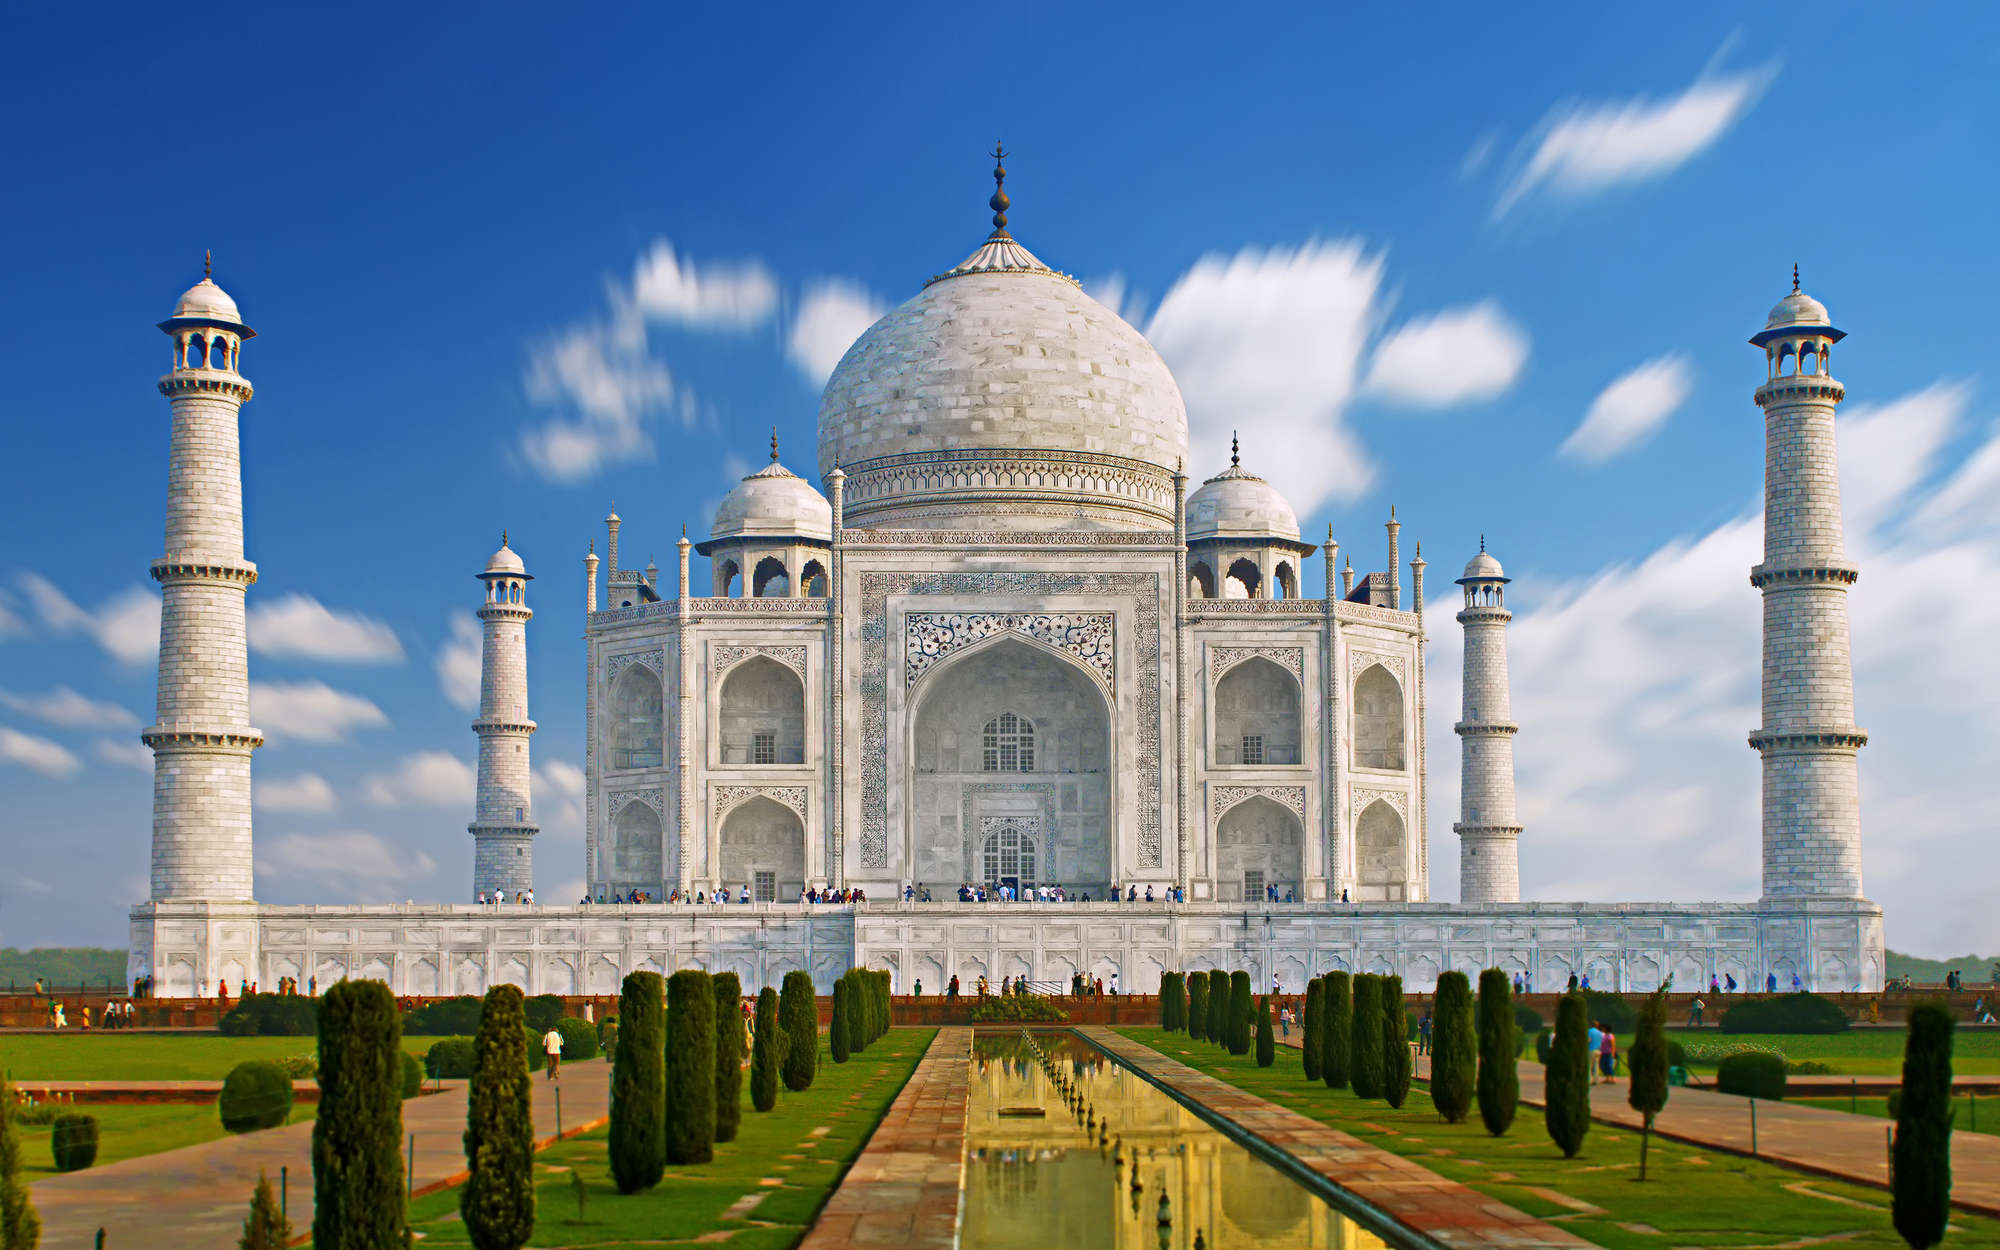             Fotomural Taj Mahal en Turquía - tejido no tejido liso de alta calidad
        